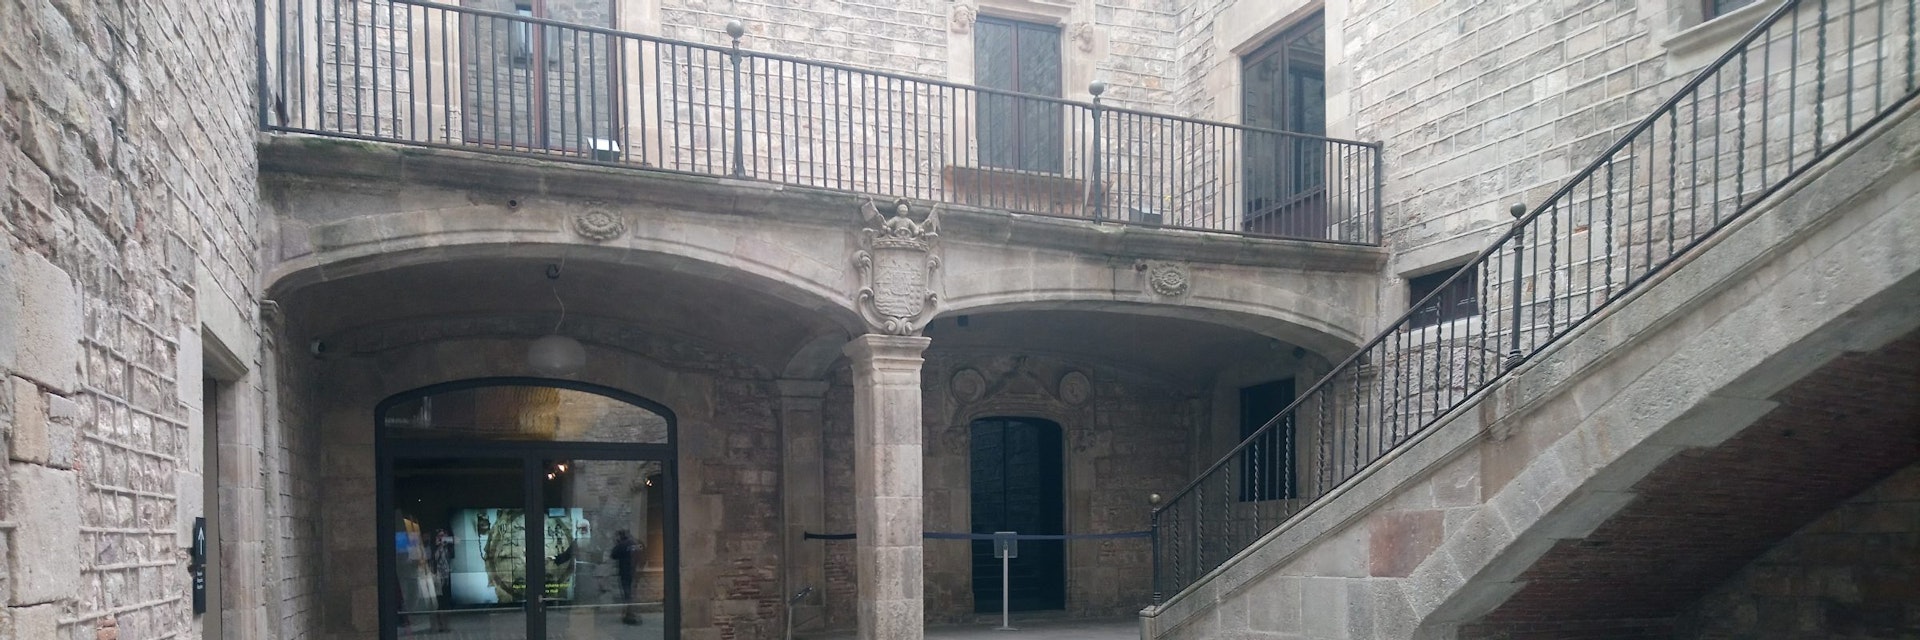 Courtyard of the Museu de Cultures del Món